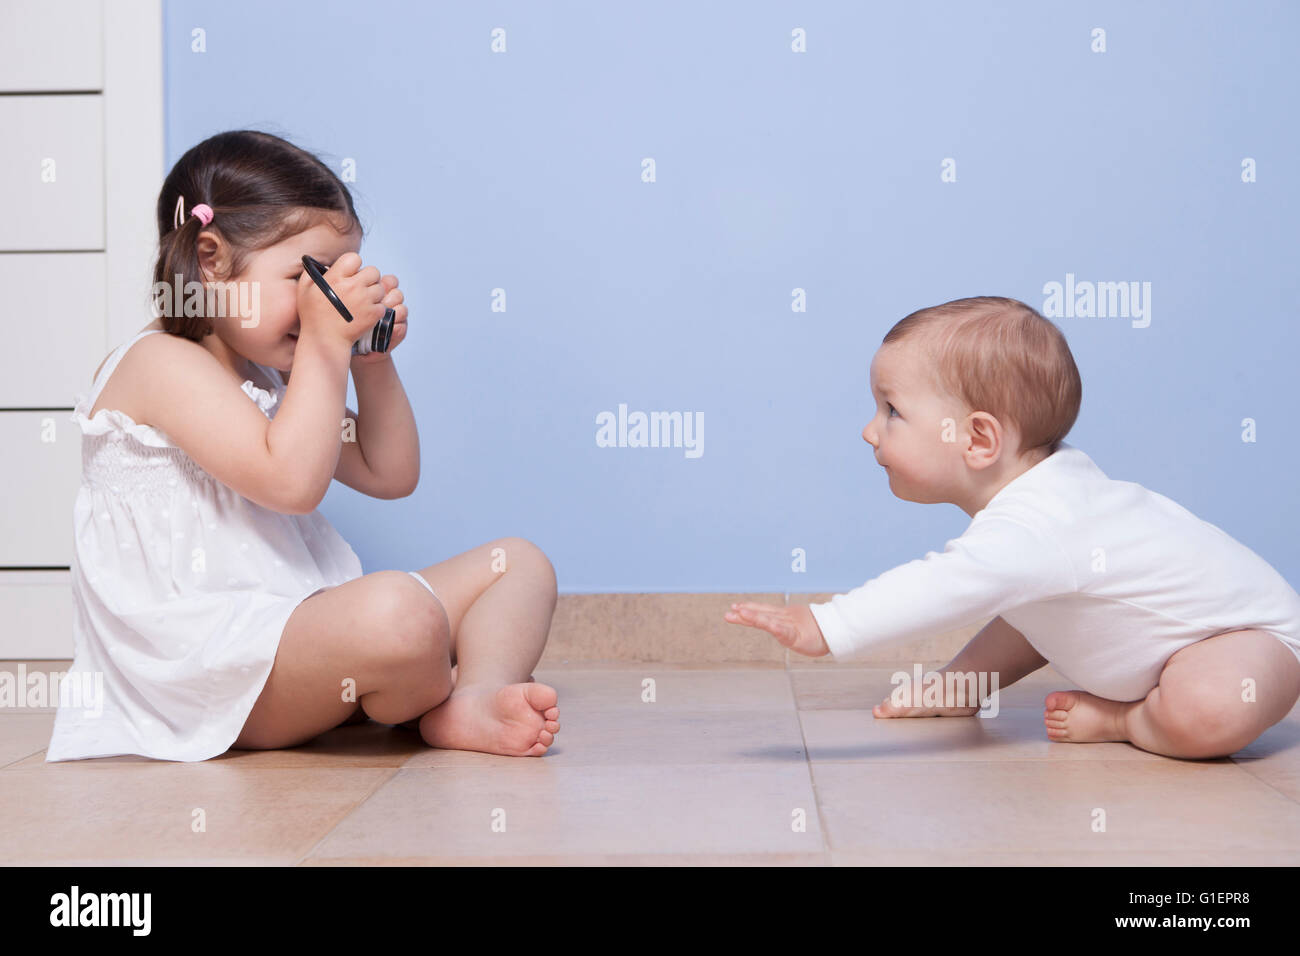 Junges Mädchen Fotograf. Hübsche kleine Schwester zu ihrem Bruder Baby mit alten analogen Kamera fotografieren Stockfoto